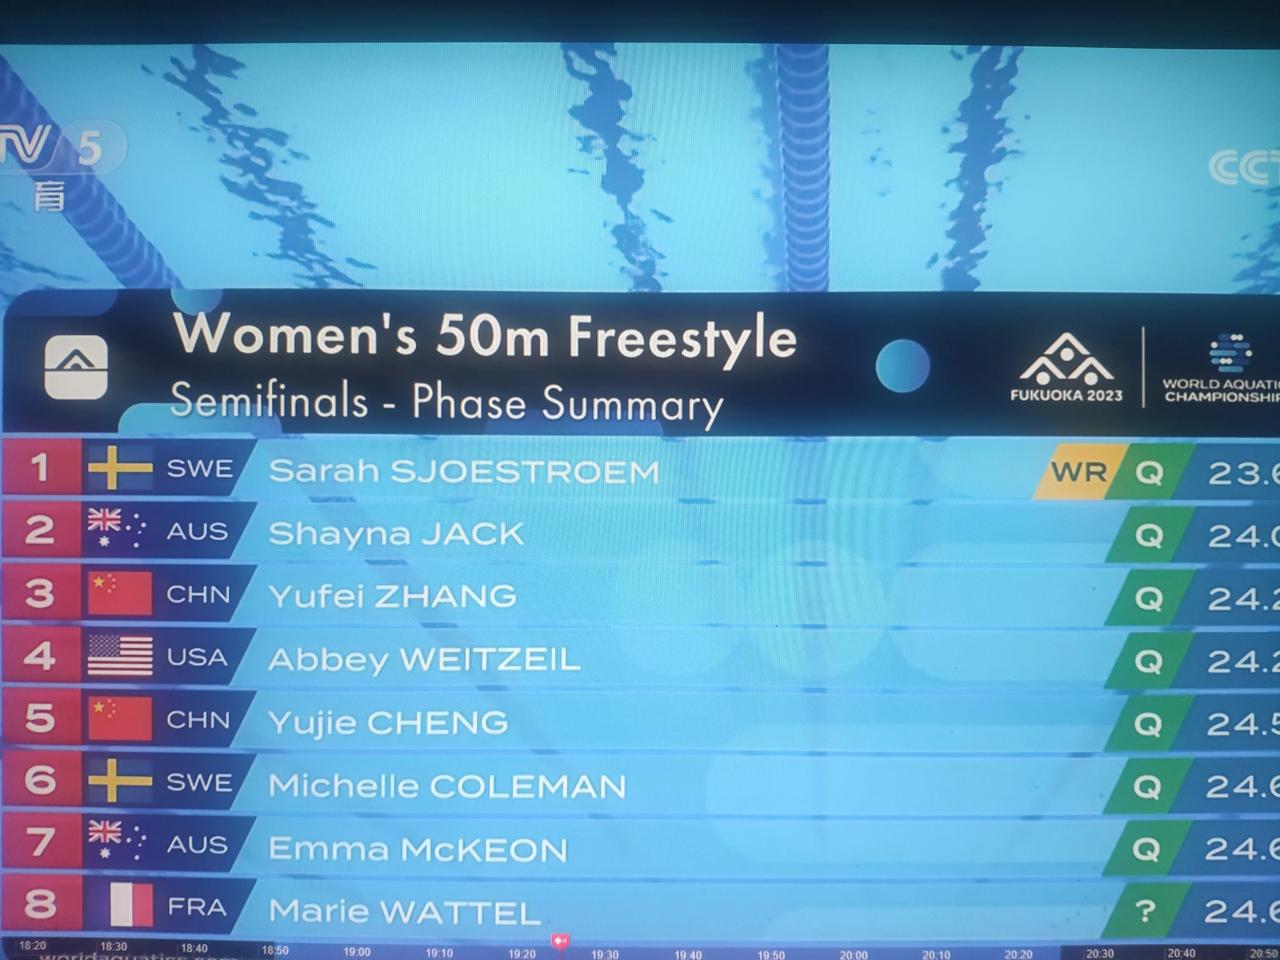 我算是见识到人生大喜了。刚才看福冈世锦赛，女子50米蝶泳决赛，舍斯特伦拿了冠军。